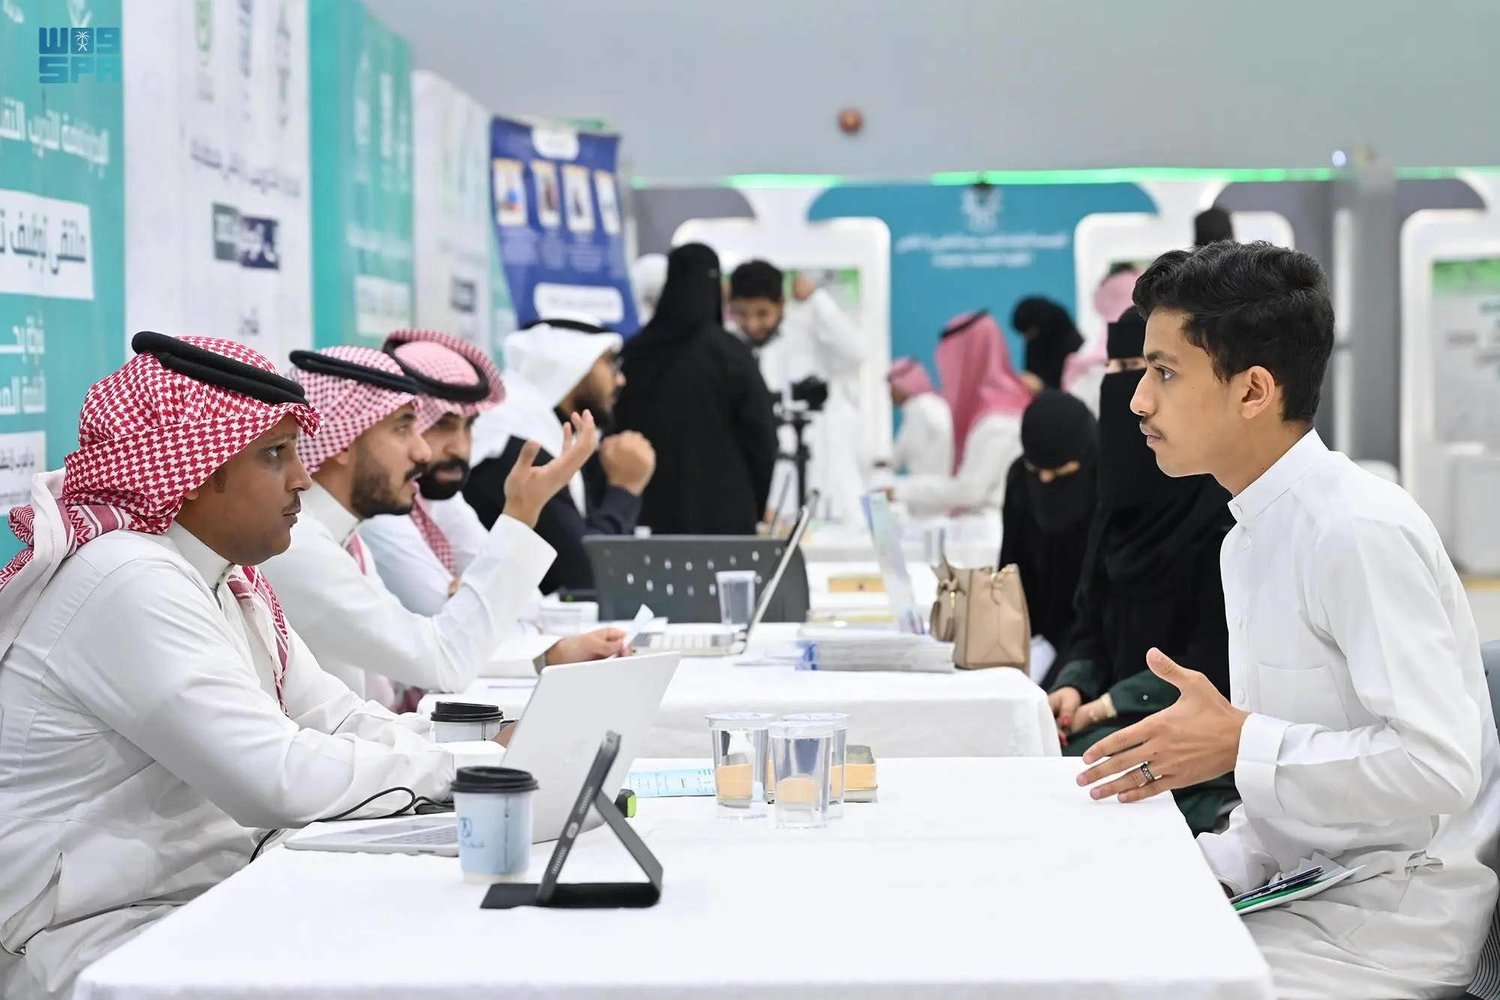 أحد ملتقيات التوظيف في السعودية التي تجمع الباحثين عن العمل مع الشركات (الشرق الأوسط)